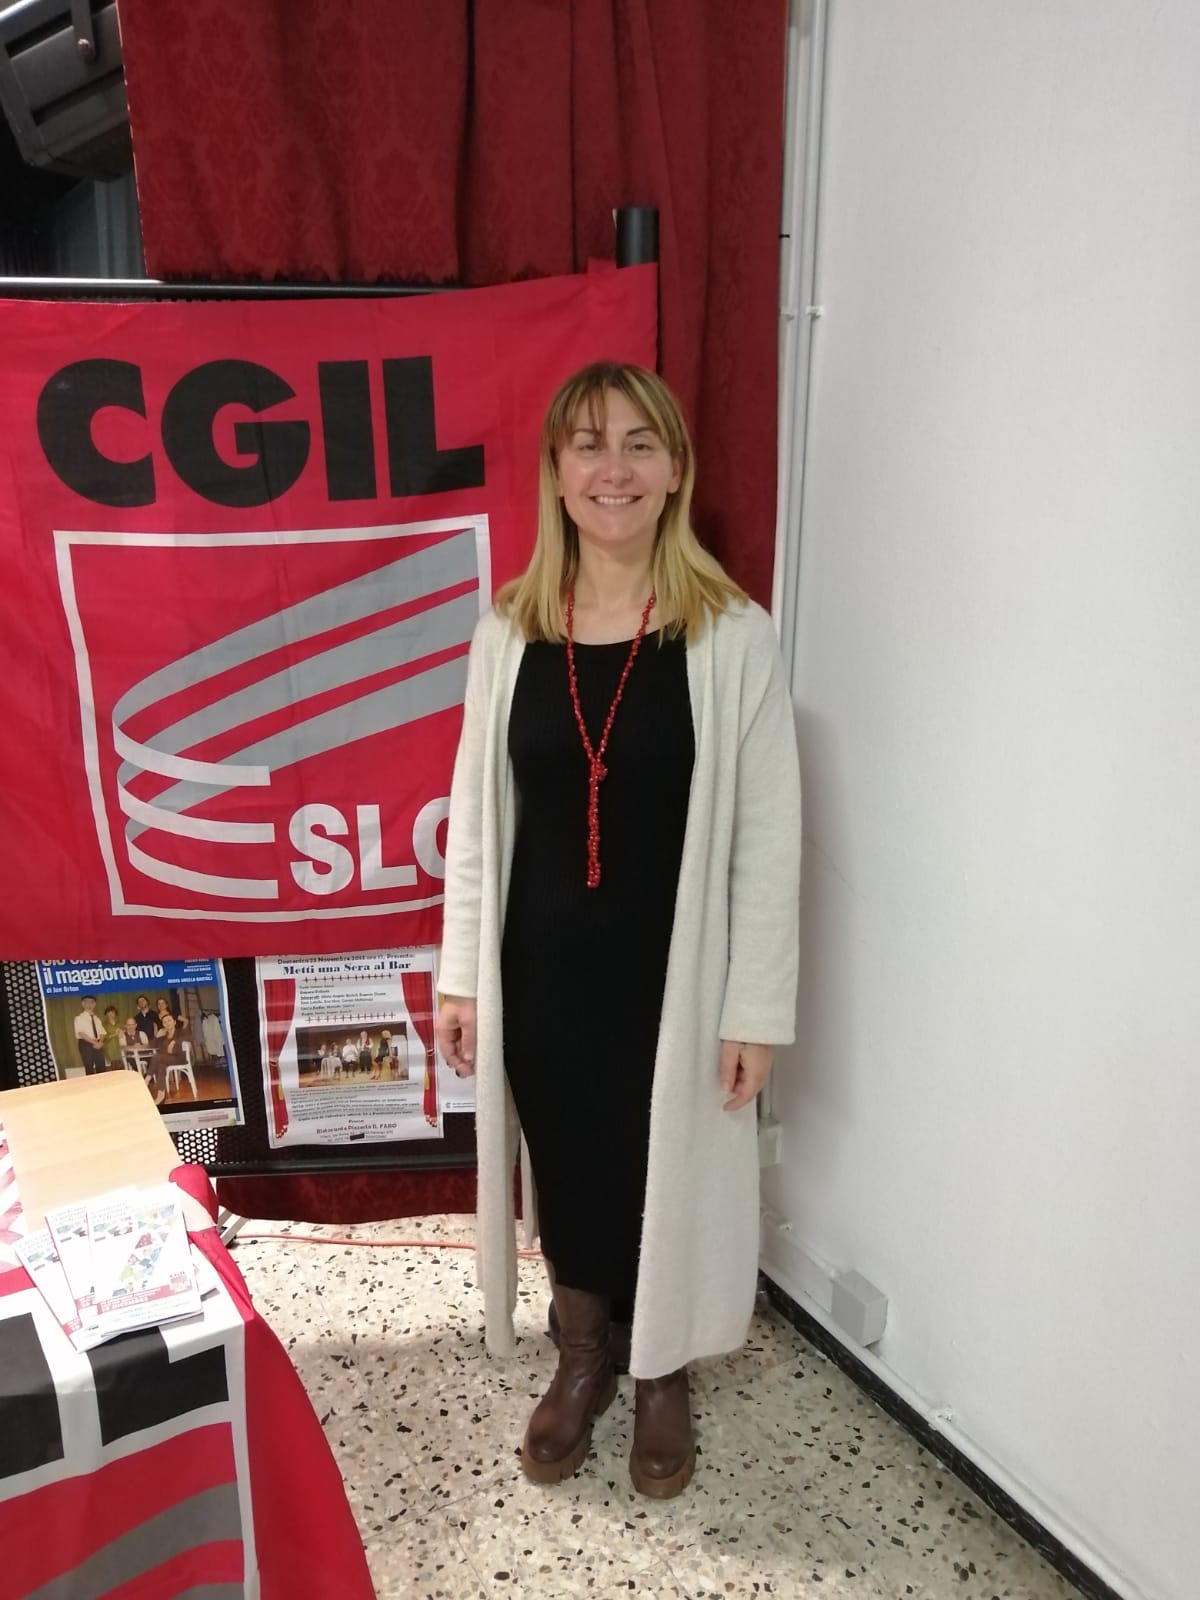 Monia Castelli confermata Segretaria SLC CGIL Area Sud e Segretaria SLC CGIL Cremona